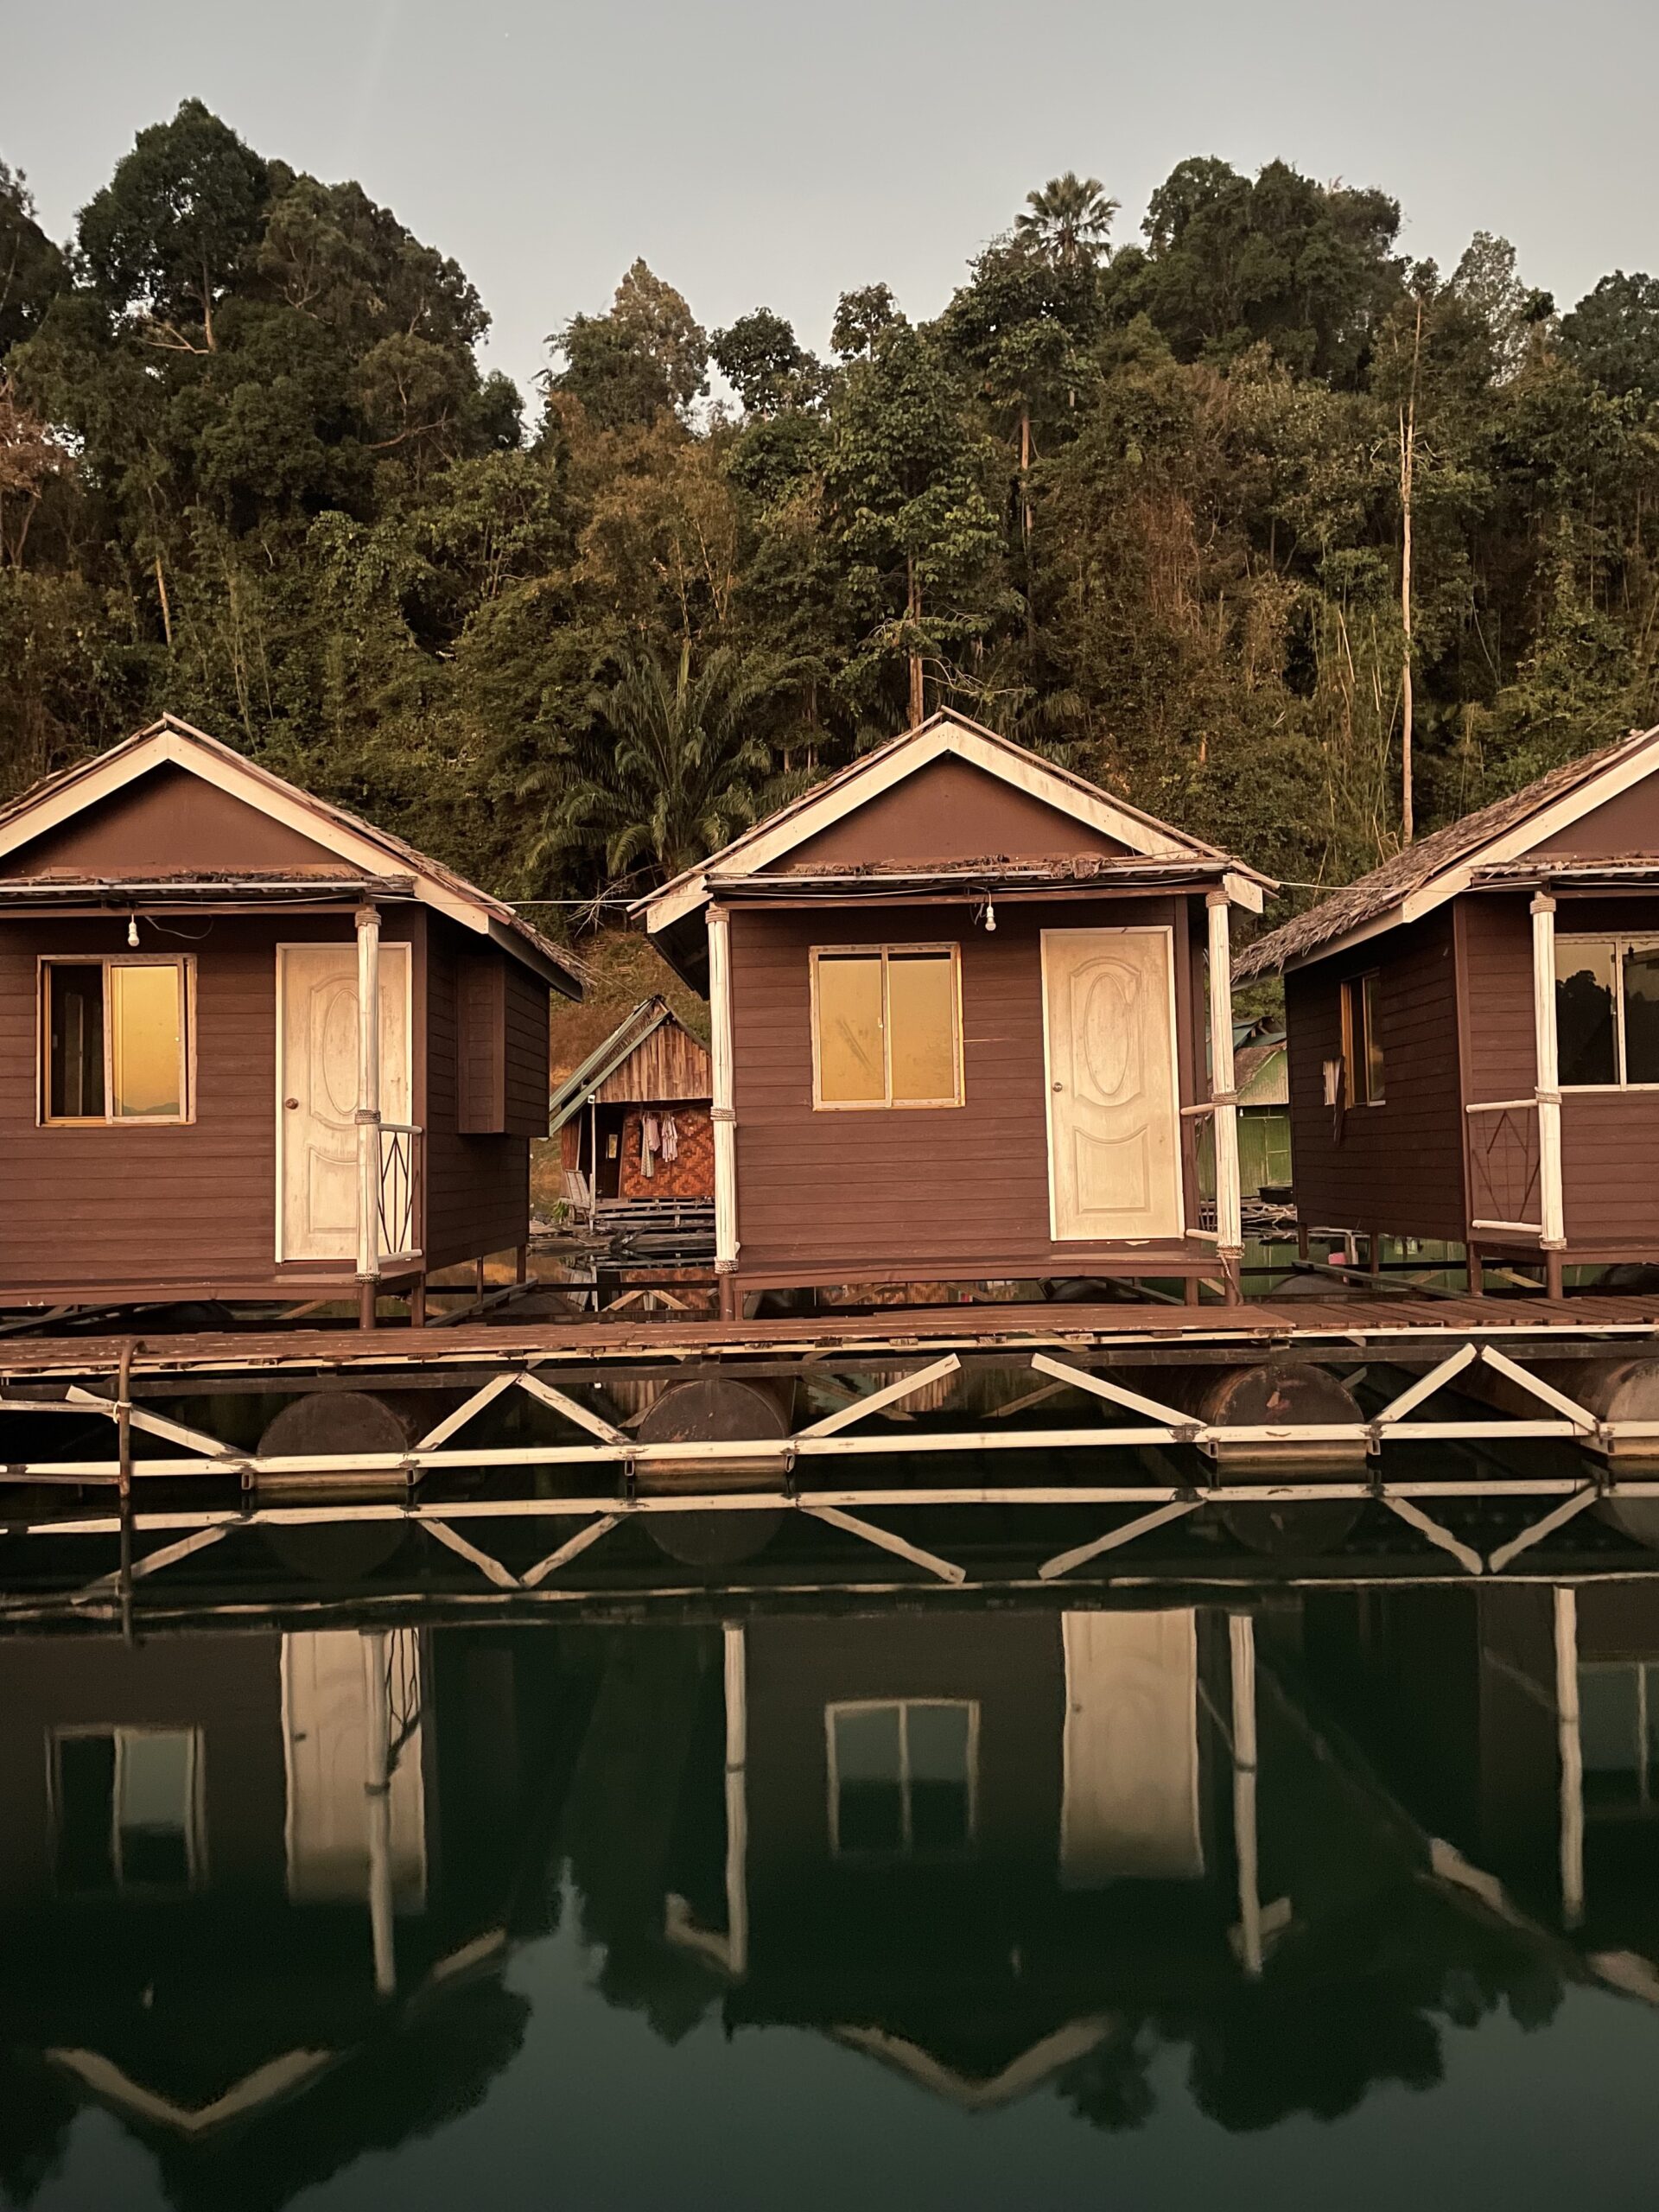 khao sok overnight tour - jungle huts khao sok - slapen national park khao sok - khao sok riverside cottages